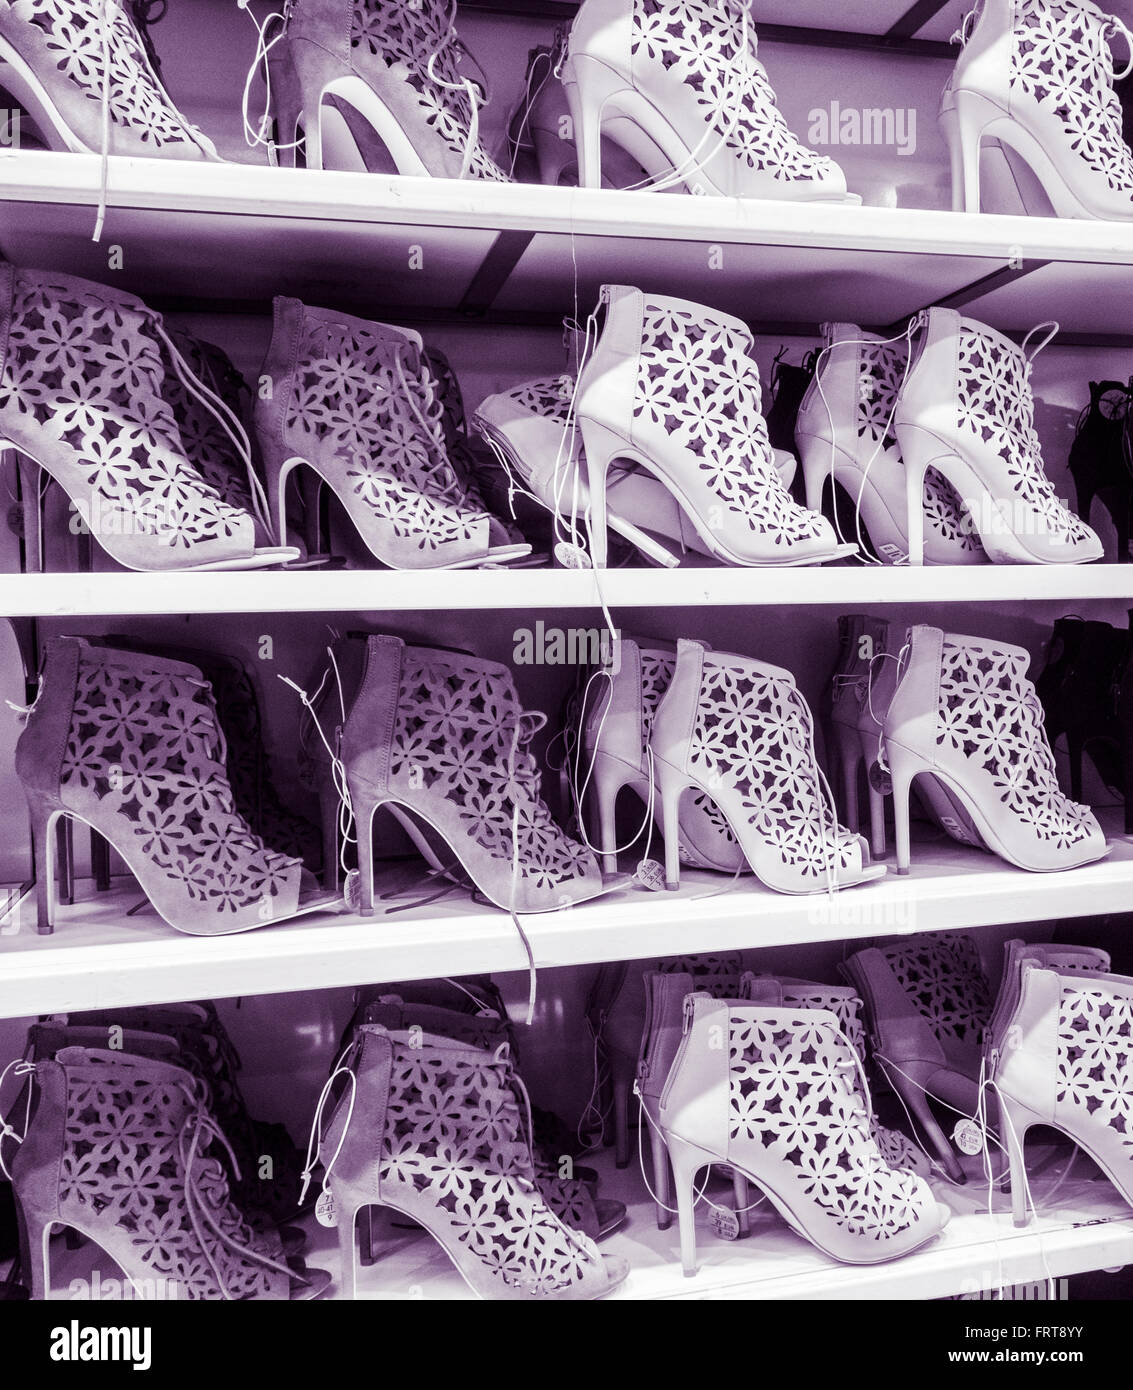 Zapatos primark imágenes de alta resolución - Alamy